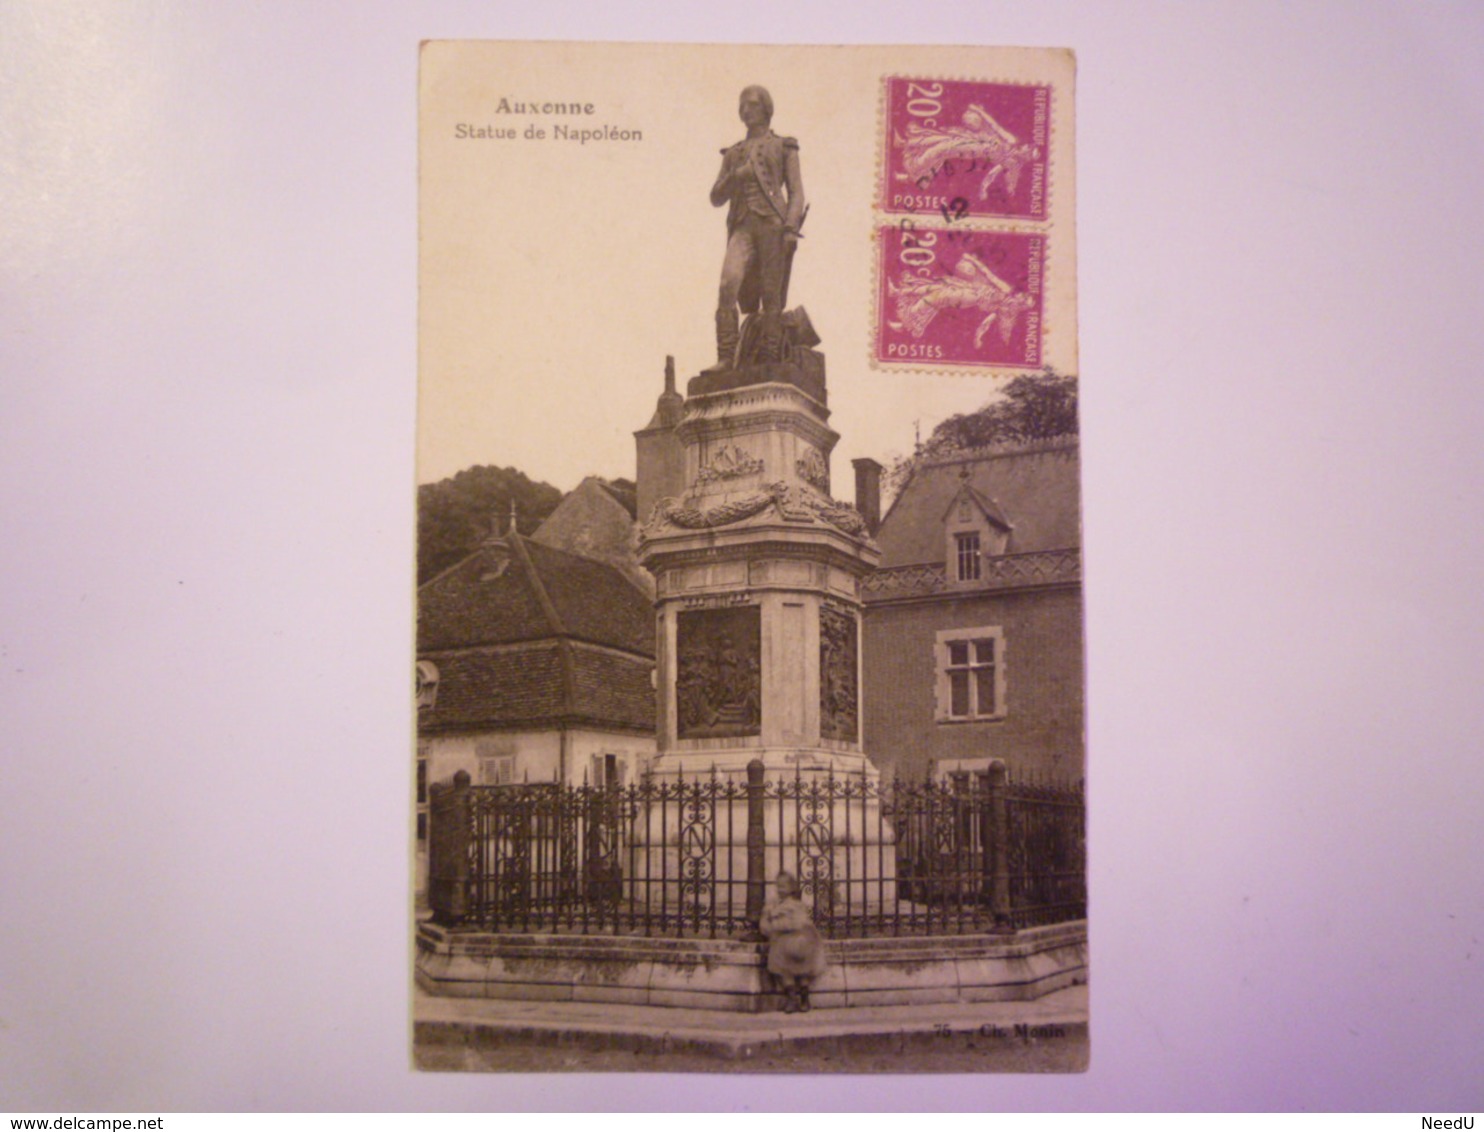 AUXONNE  (Côte D'Or)  :  Statue De  NAPOLEON  1935   XXX - Auxonne